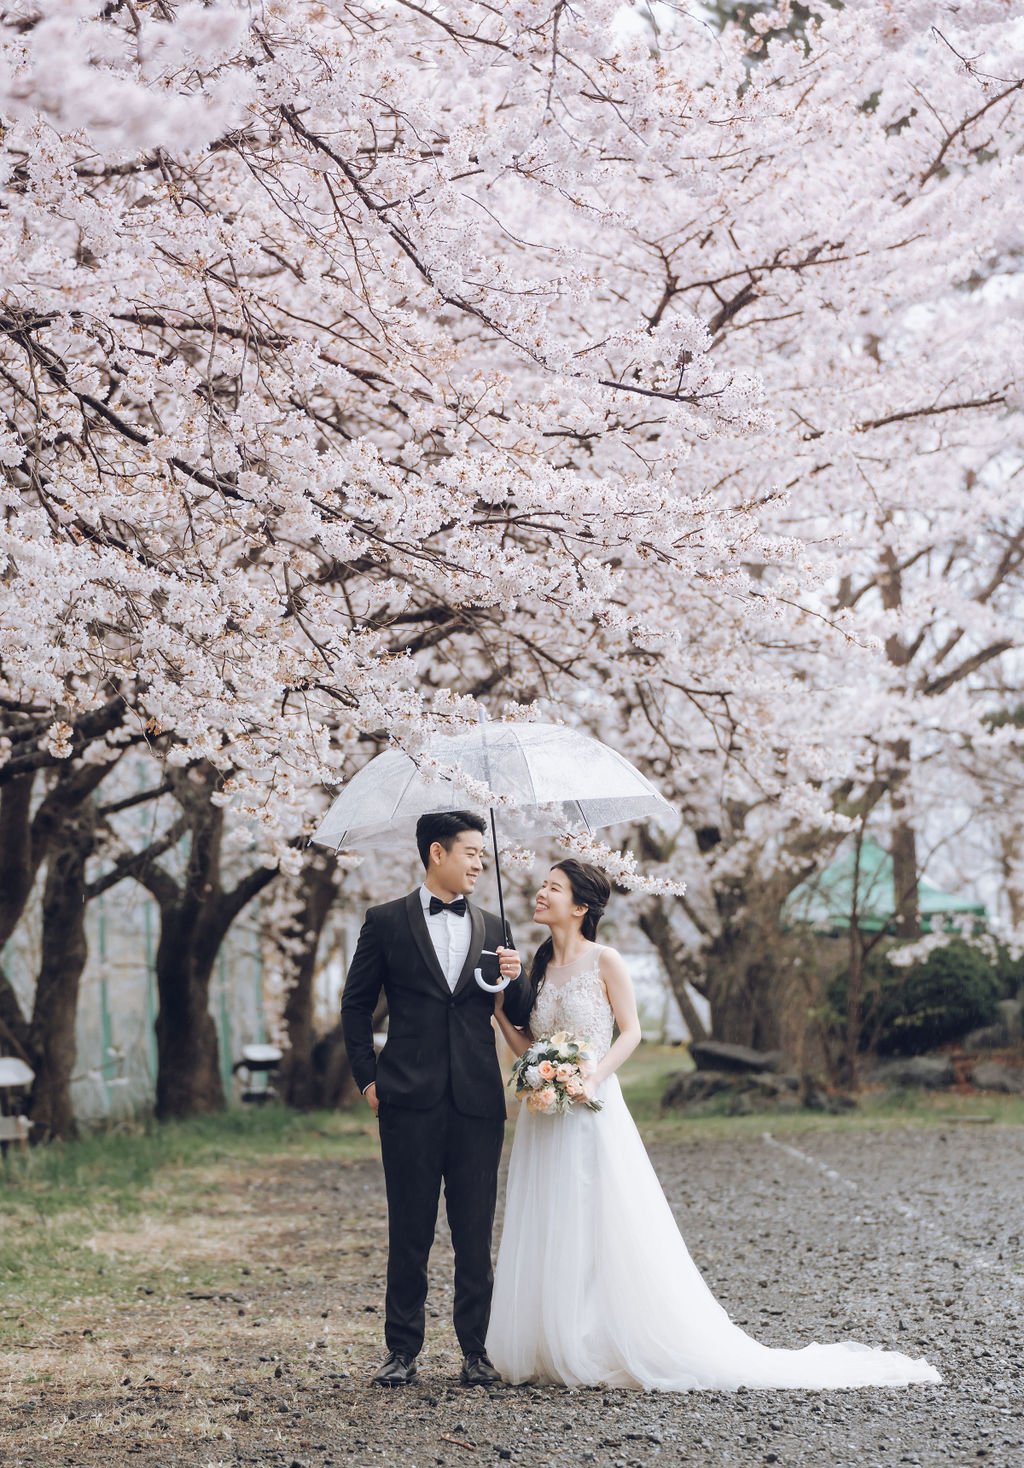 US Couple's Spring Season Kimono & Prewedding Photoshoot At Chureito Pagoda, Lake Kawaguchiko In Tokyo